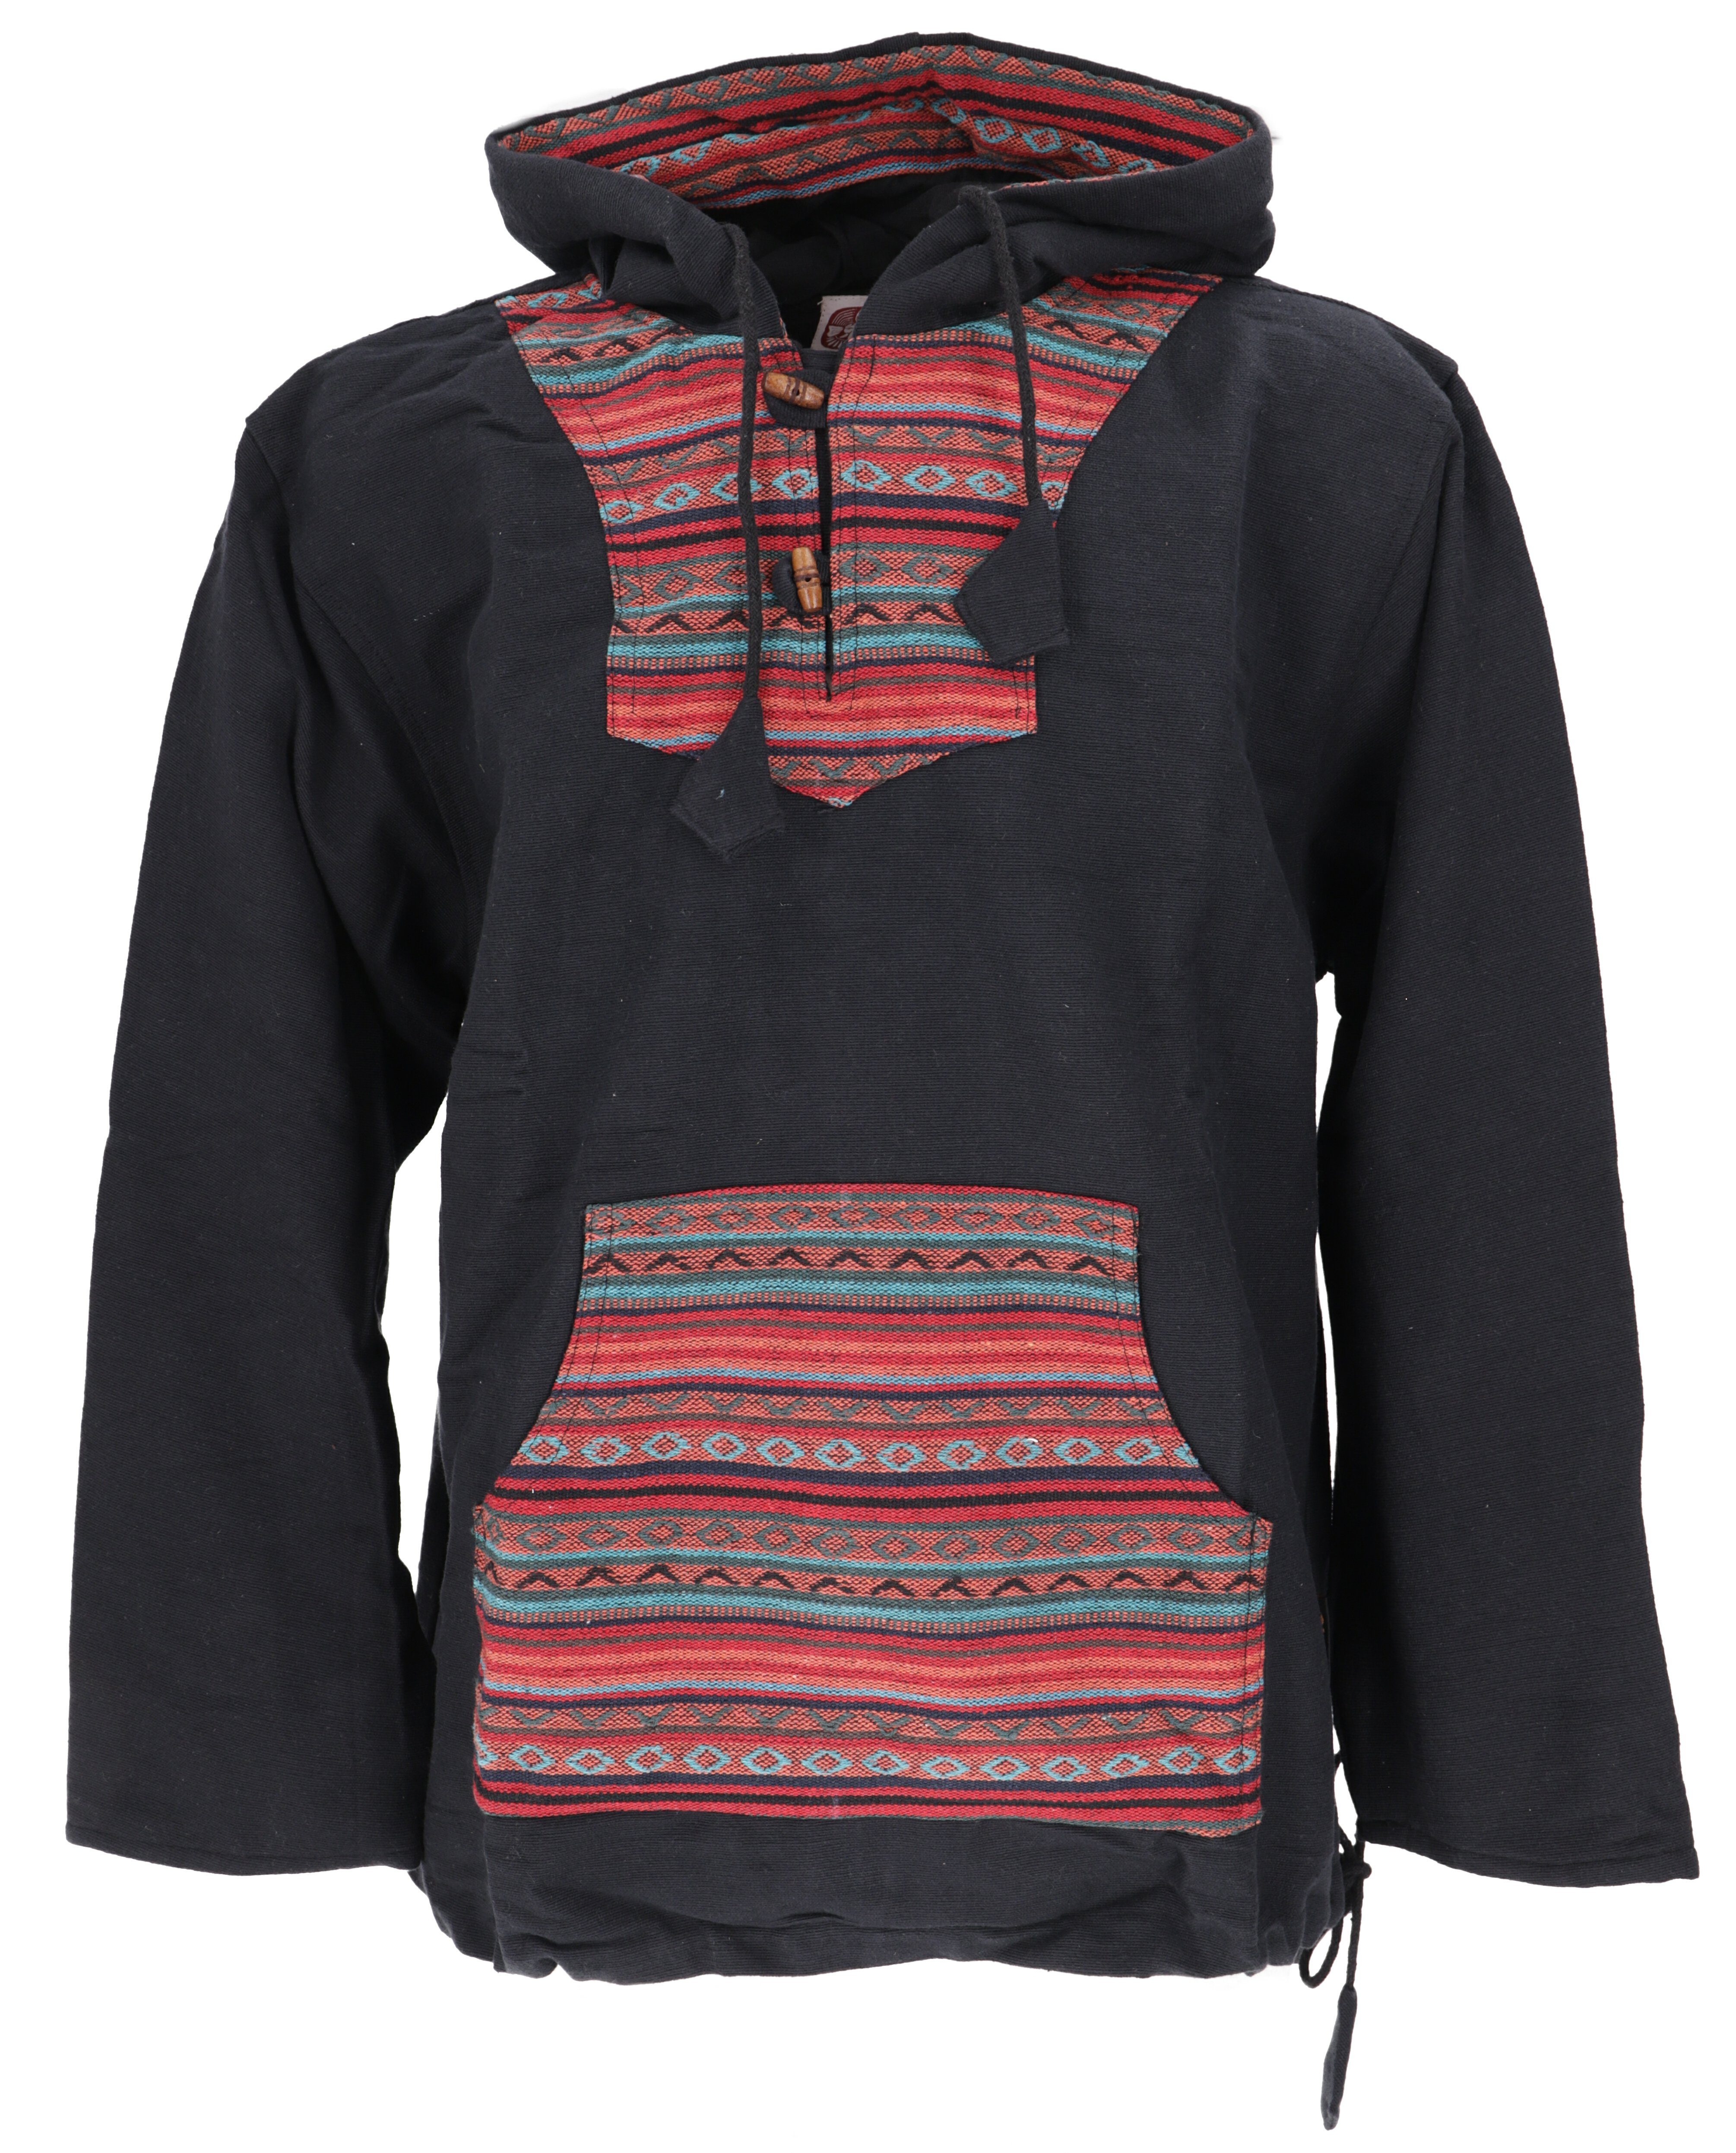 Guru-Shop Sweater Goa Kapuzenshirt, Baja Hoody - schwarz/bunt Hippie, Ethno Style, alternative Bekleidung